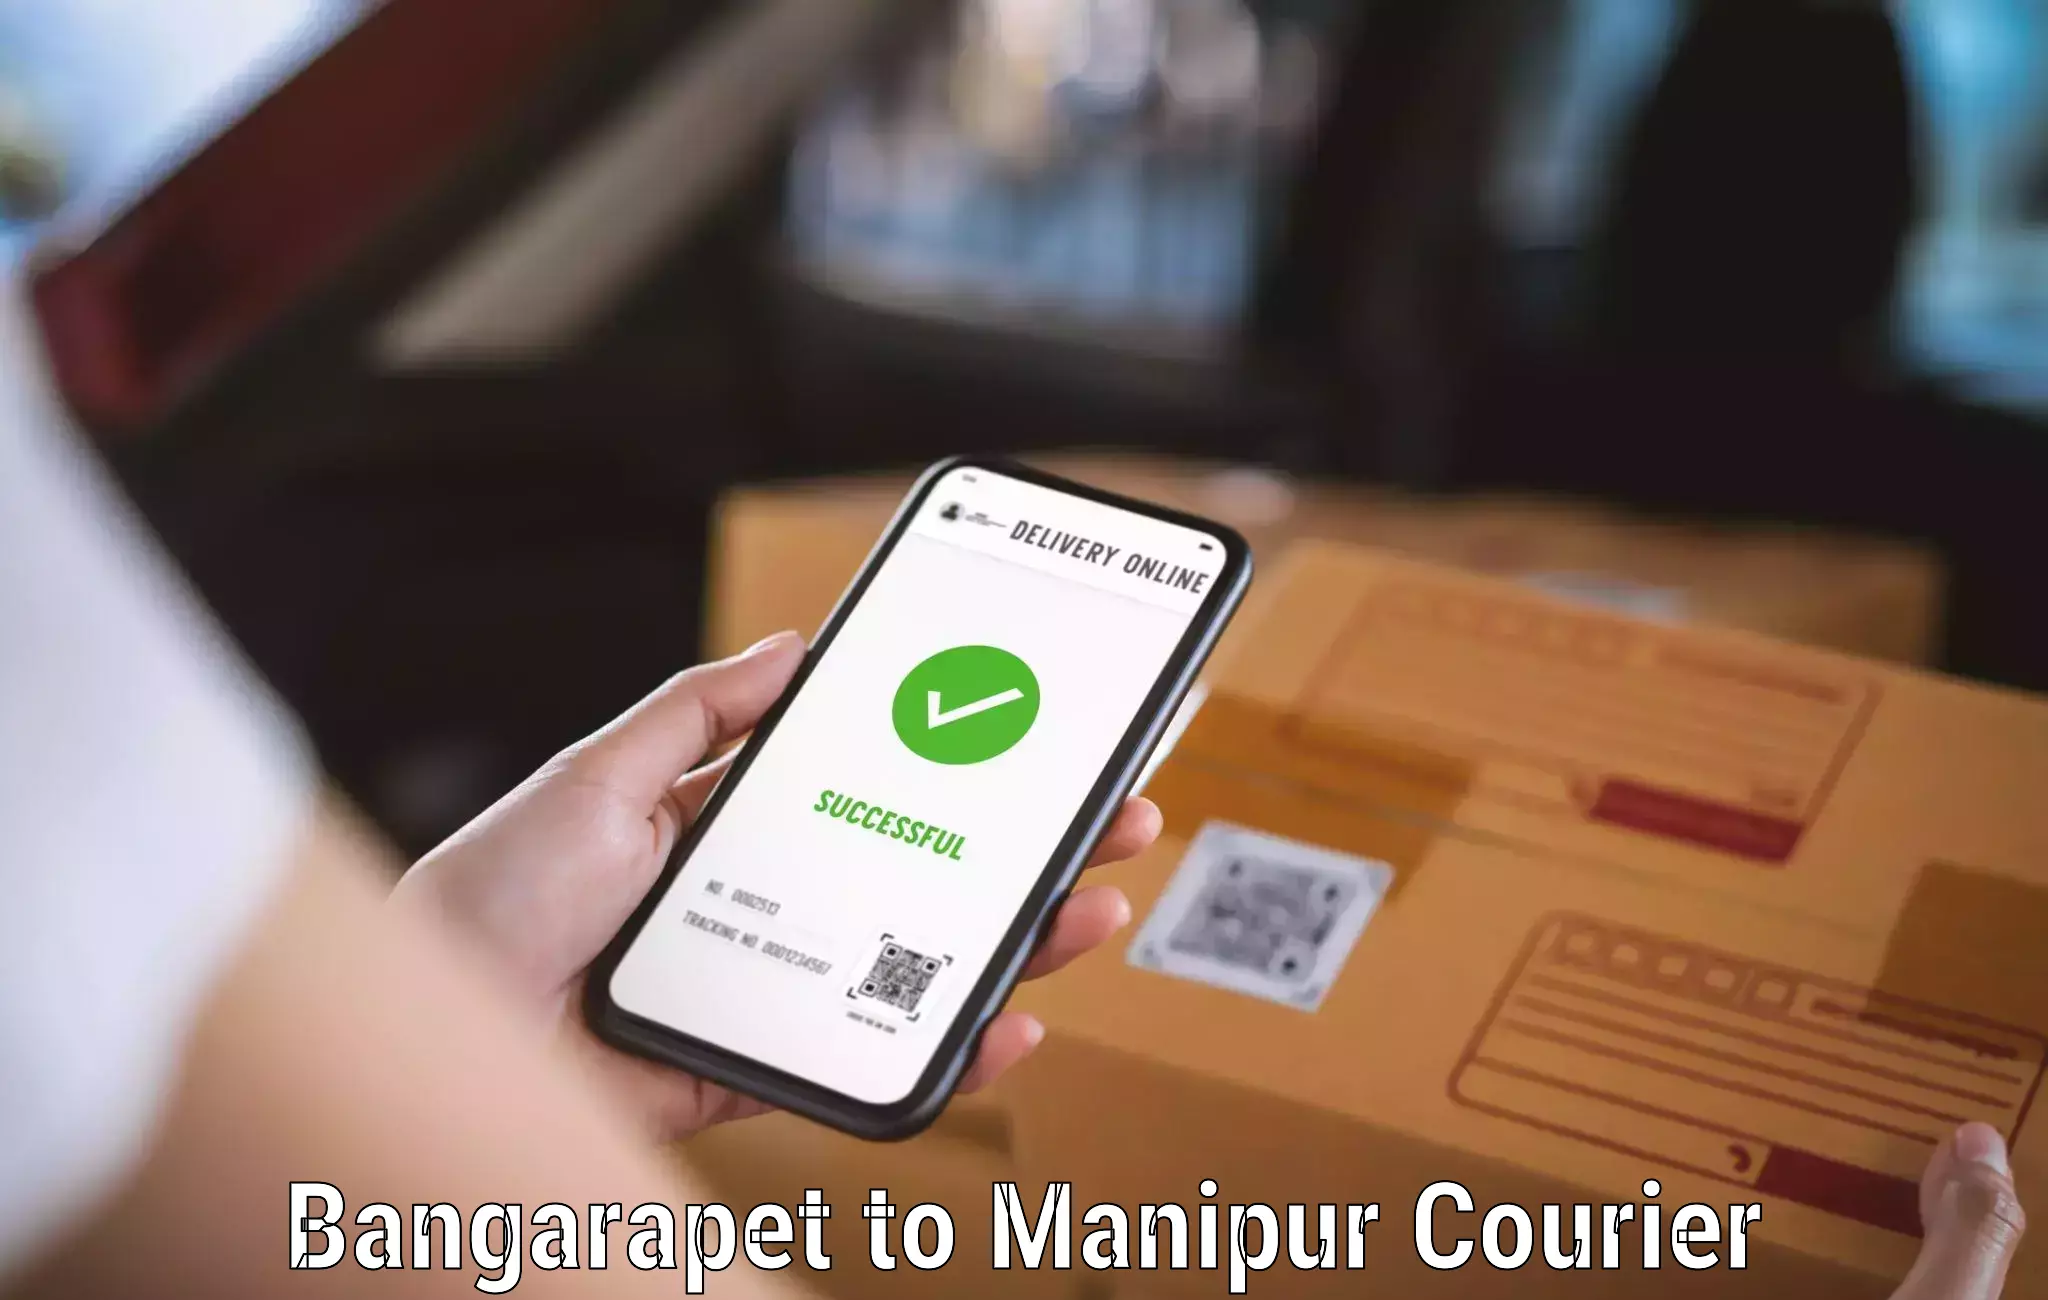 Professional courier handling Bangarapet to NIT Manipur